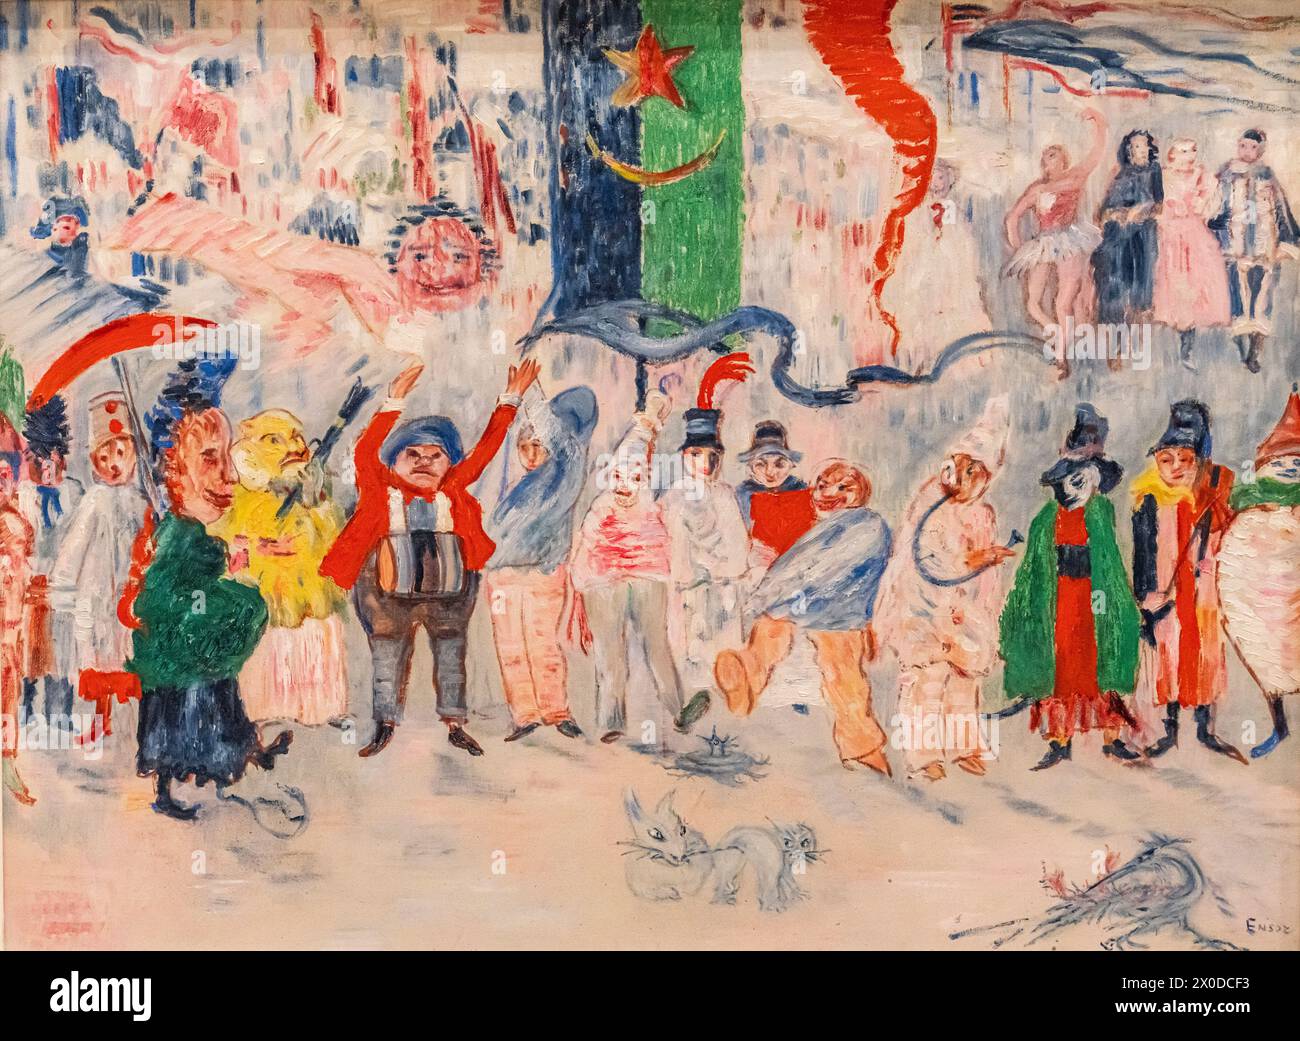 James Ensor, Carnaval en Flandre, 1929-1930, huile sur toile, Amsterdam, pays-Bas Banque D'Images